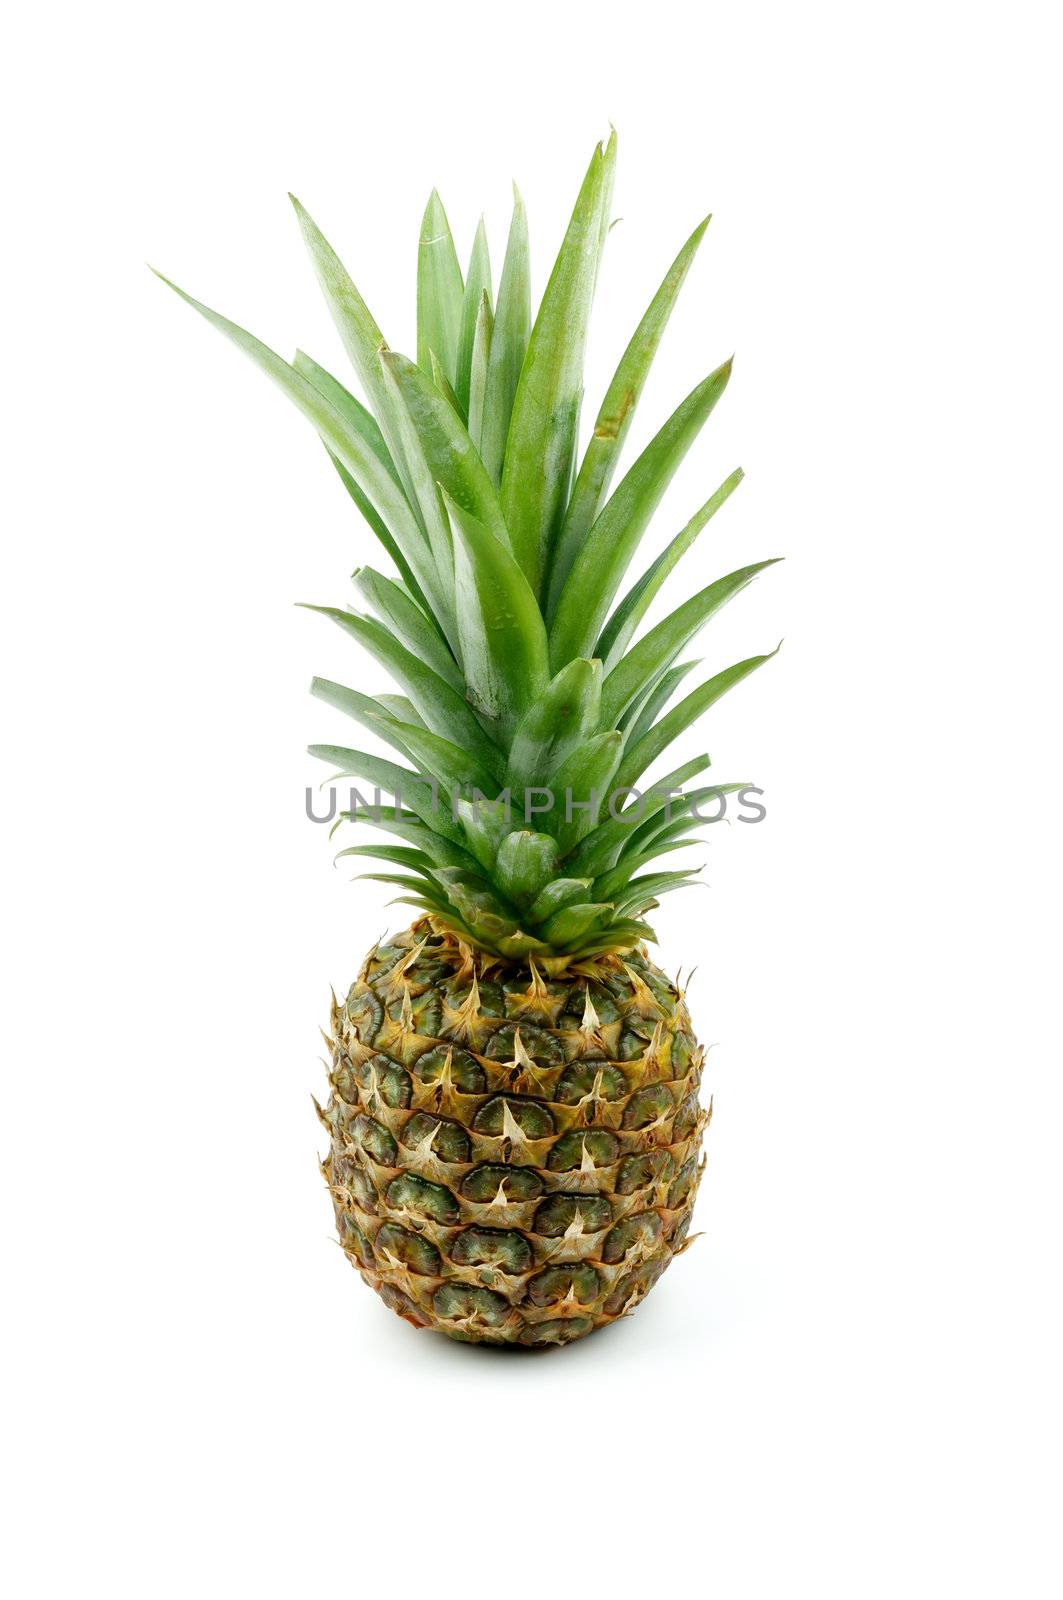 Pineapple by zhekos